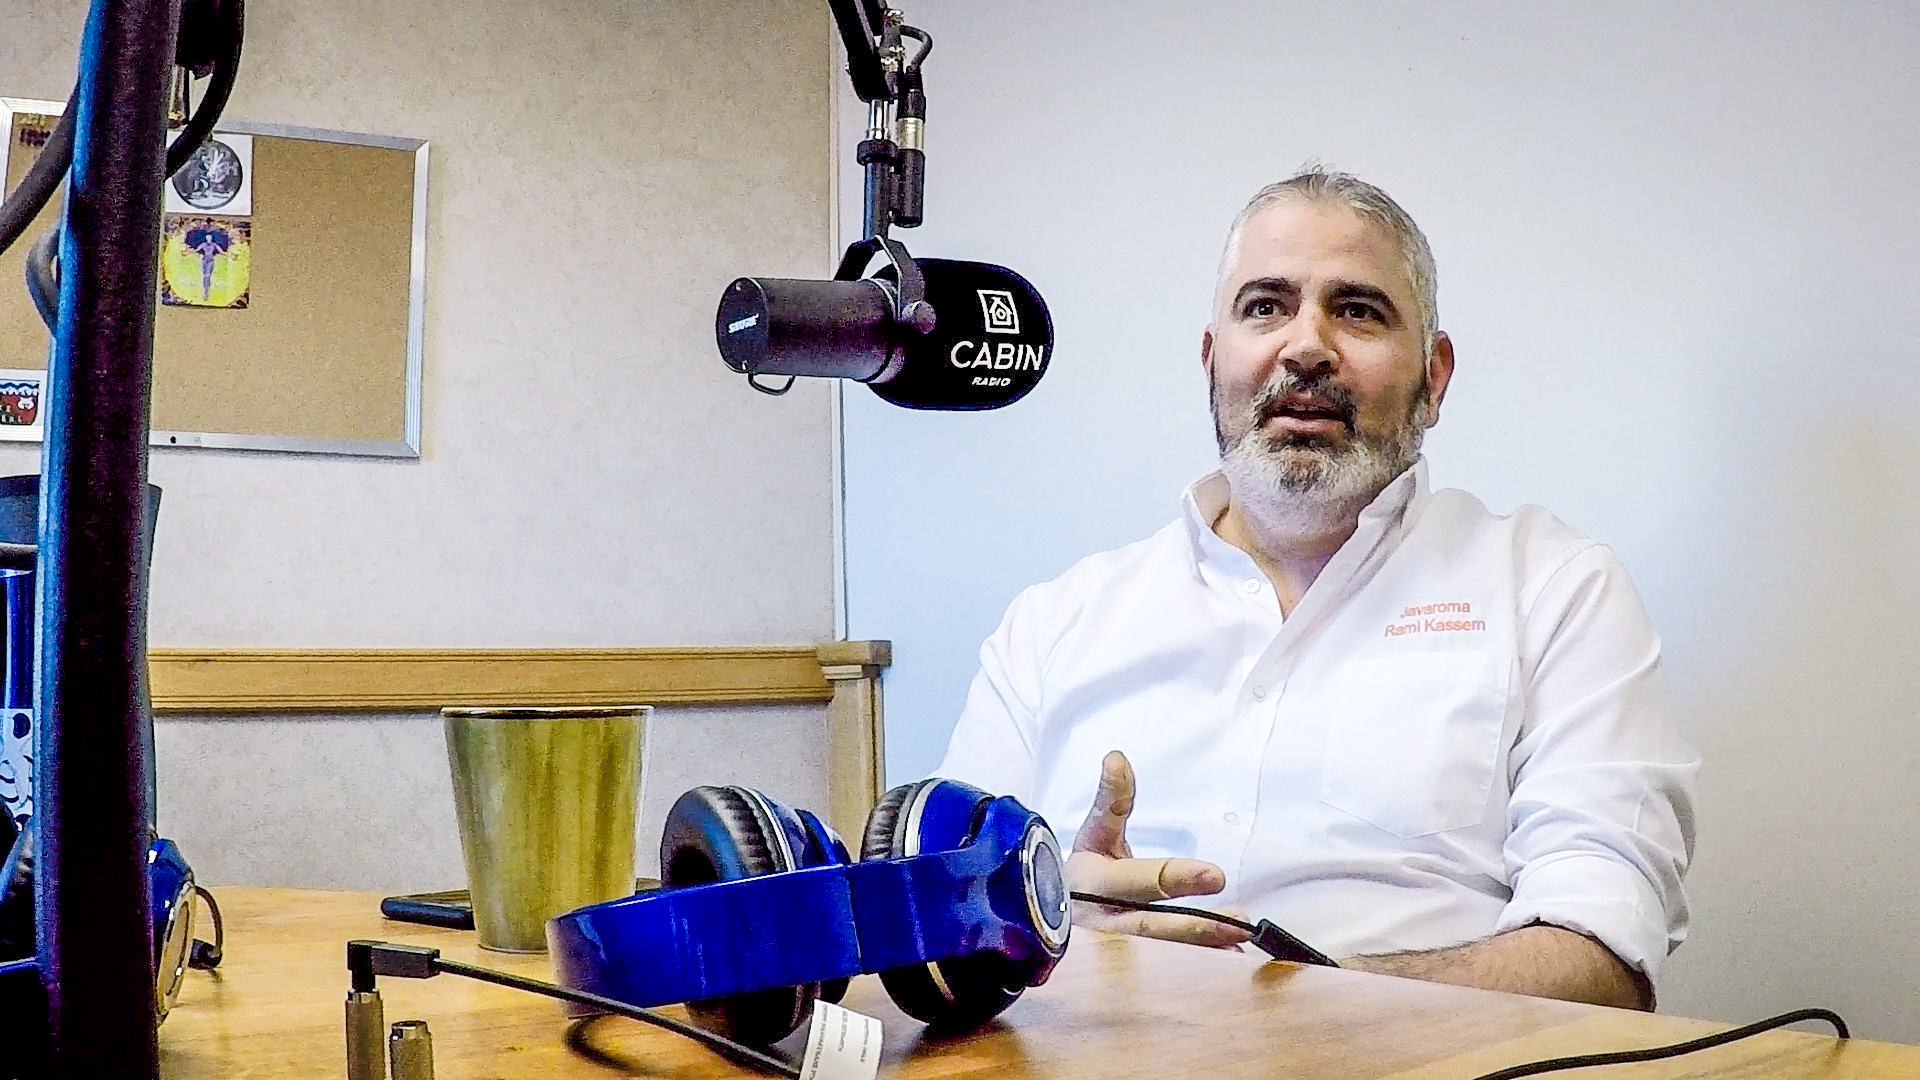 Rami Kassem, owner of Javaroma, in the Cabin Radio studio